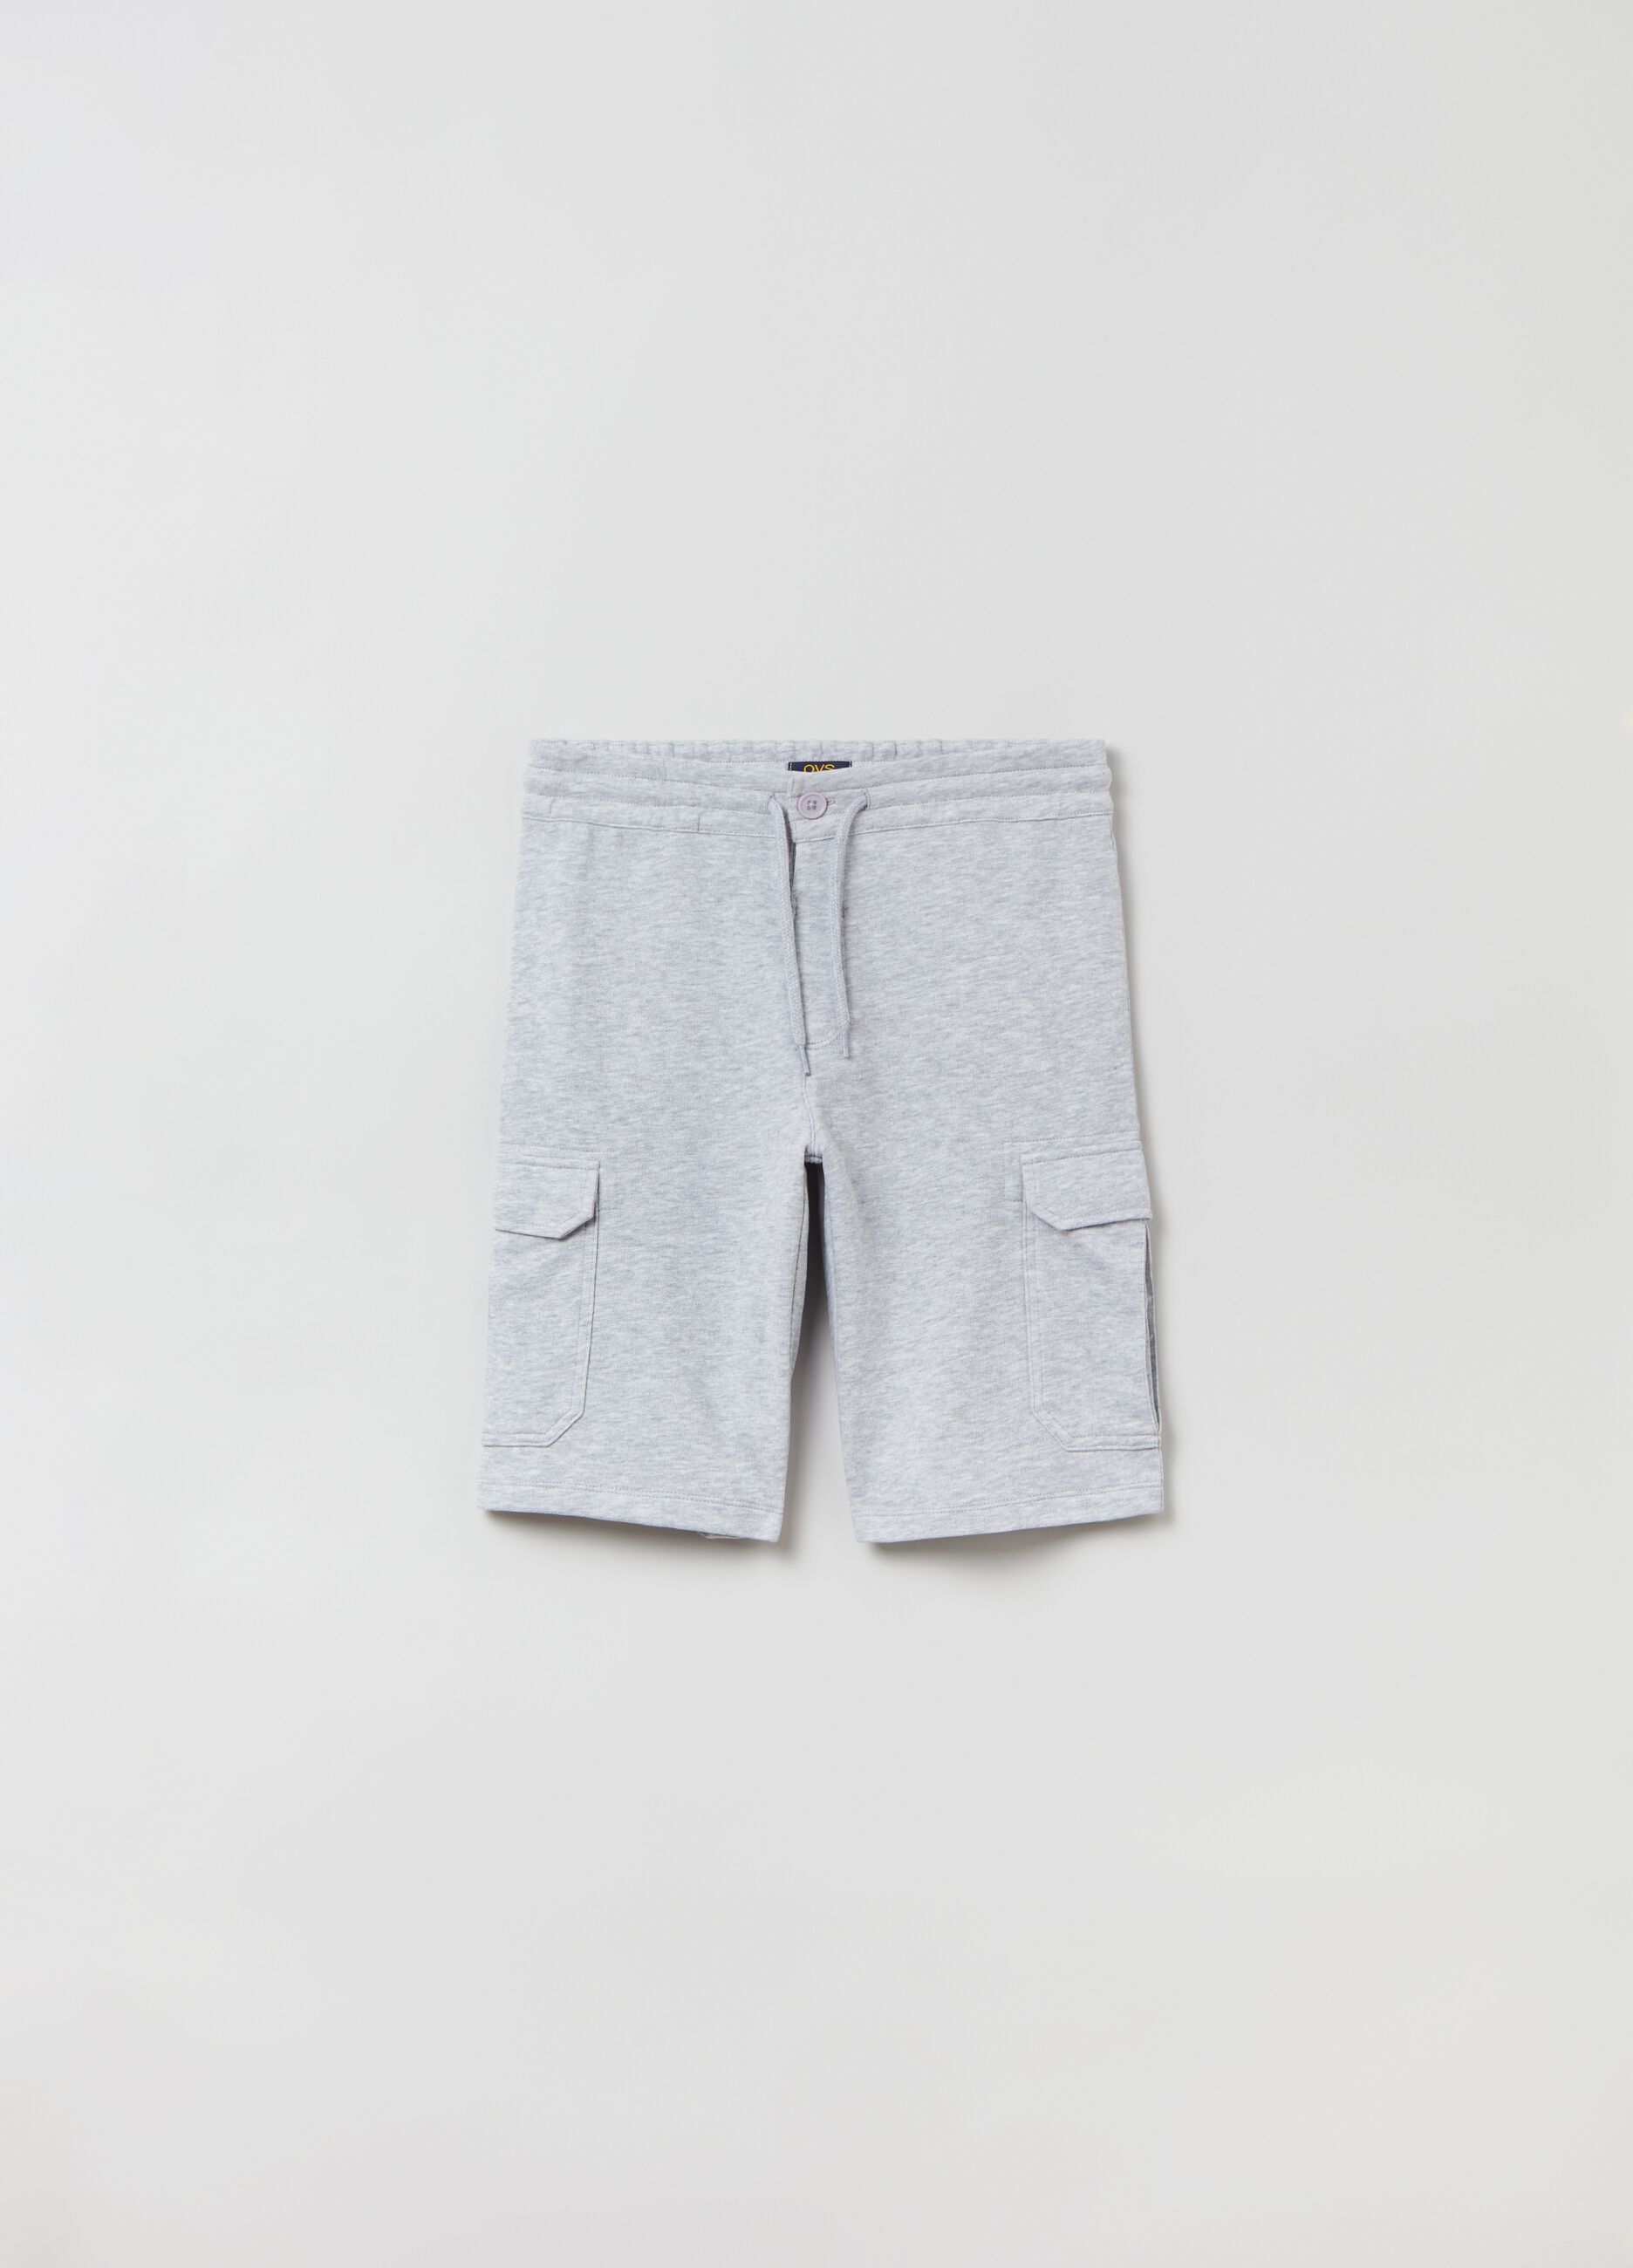 Bermuda shorts with drawstring and pockets